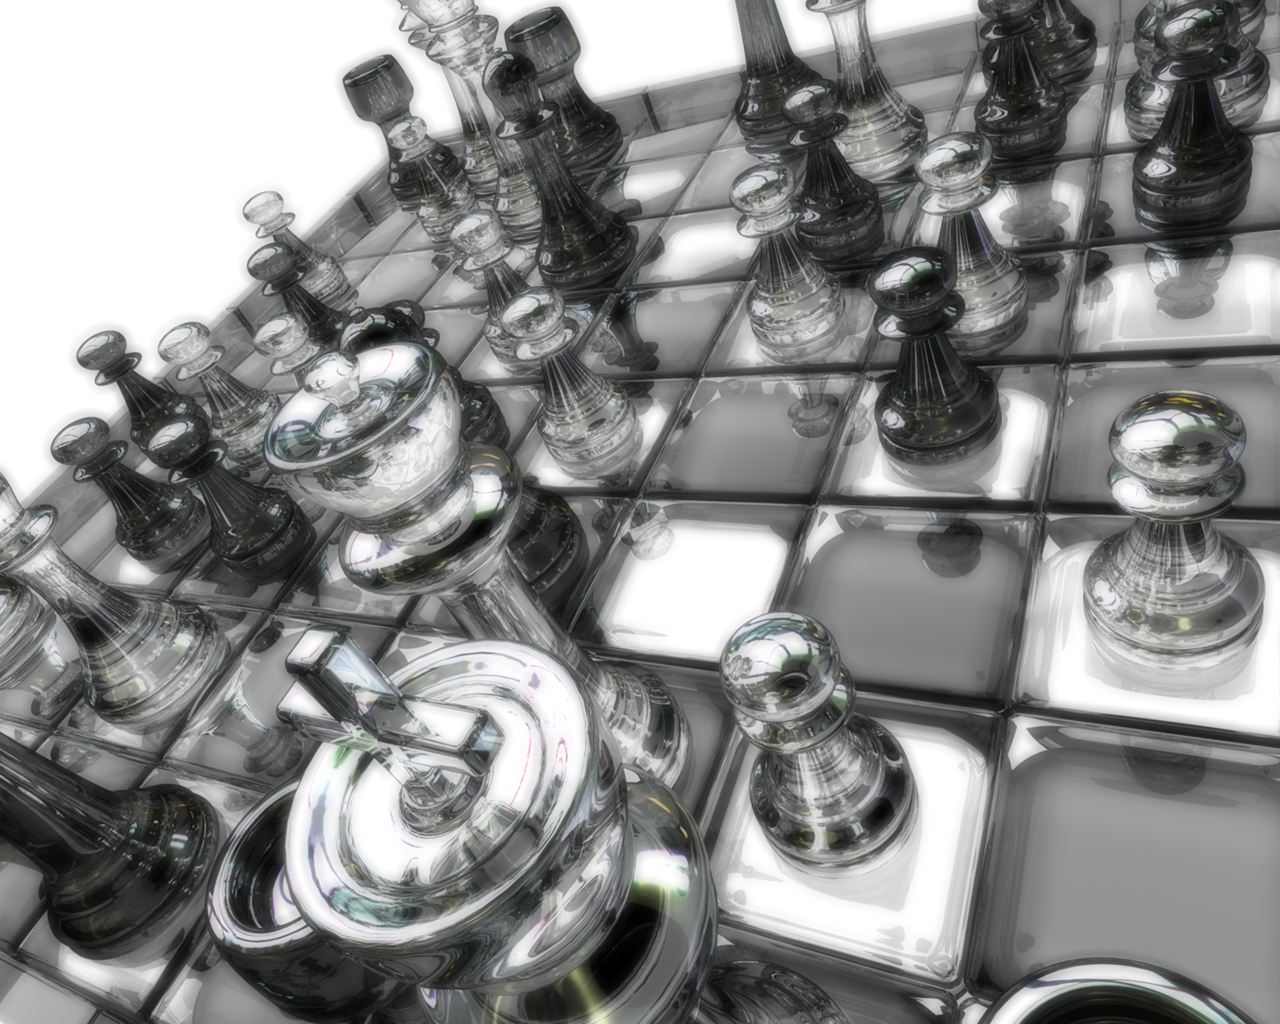 1516729 descargar imagen juego, ajedrez, vidrio: fondos de pantalla y protectores de pantalla gratis